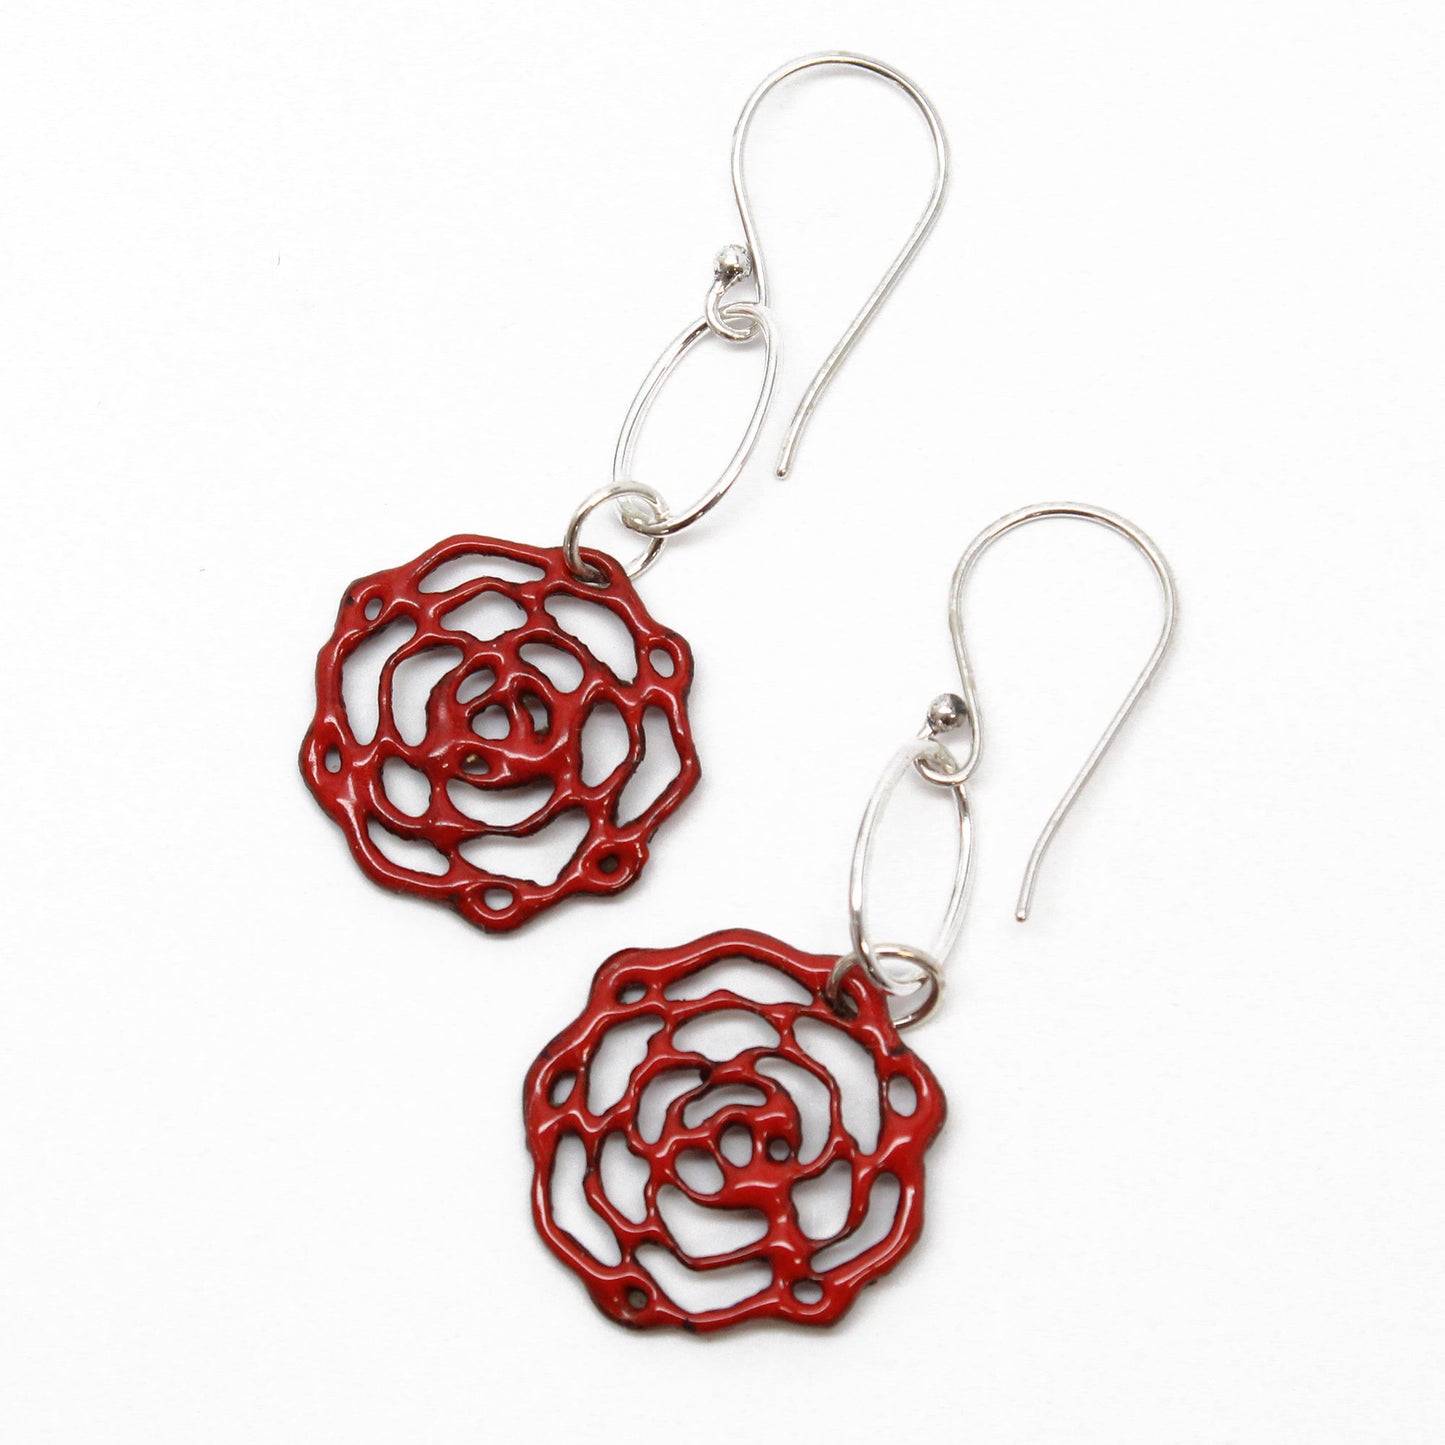 Handmade Red Enamel Flower Earrings 